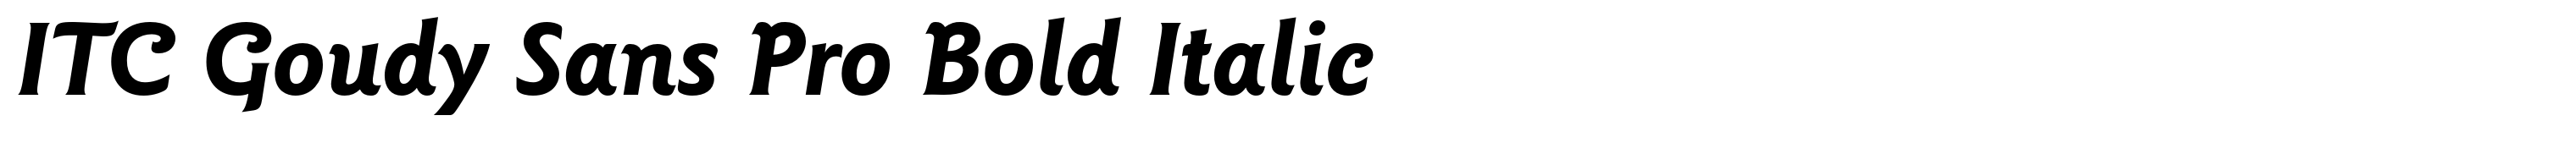 ITC Goudy Sans Pro Bold Italic